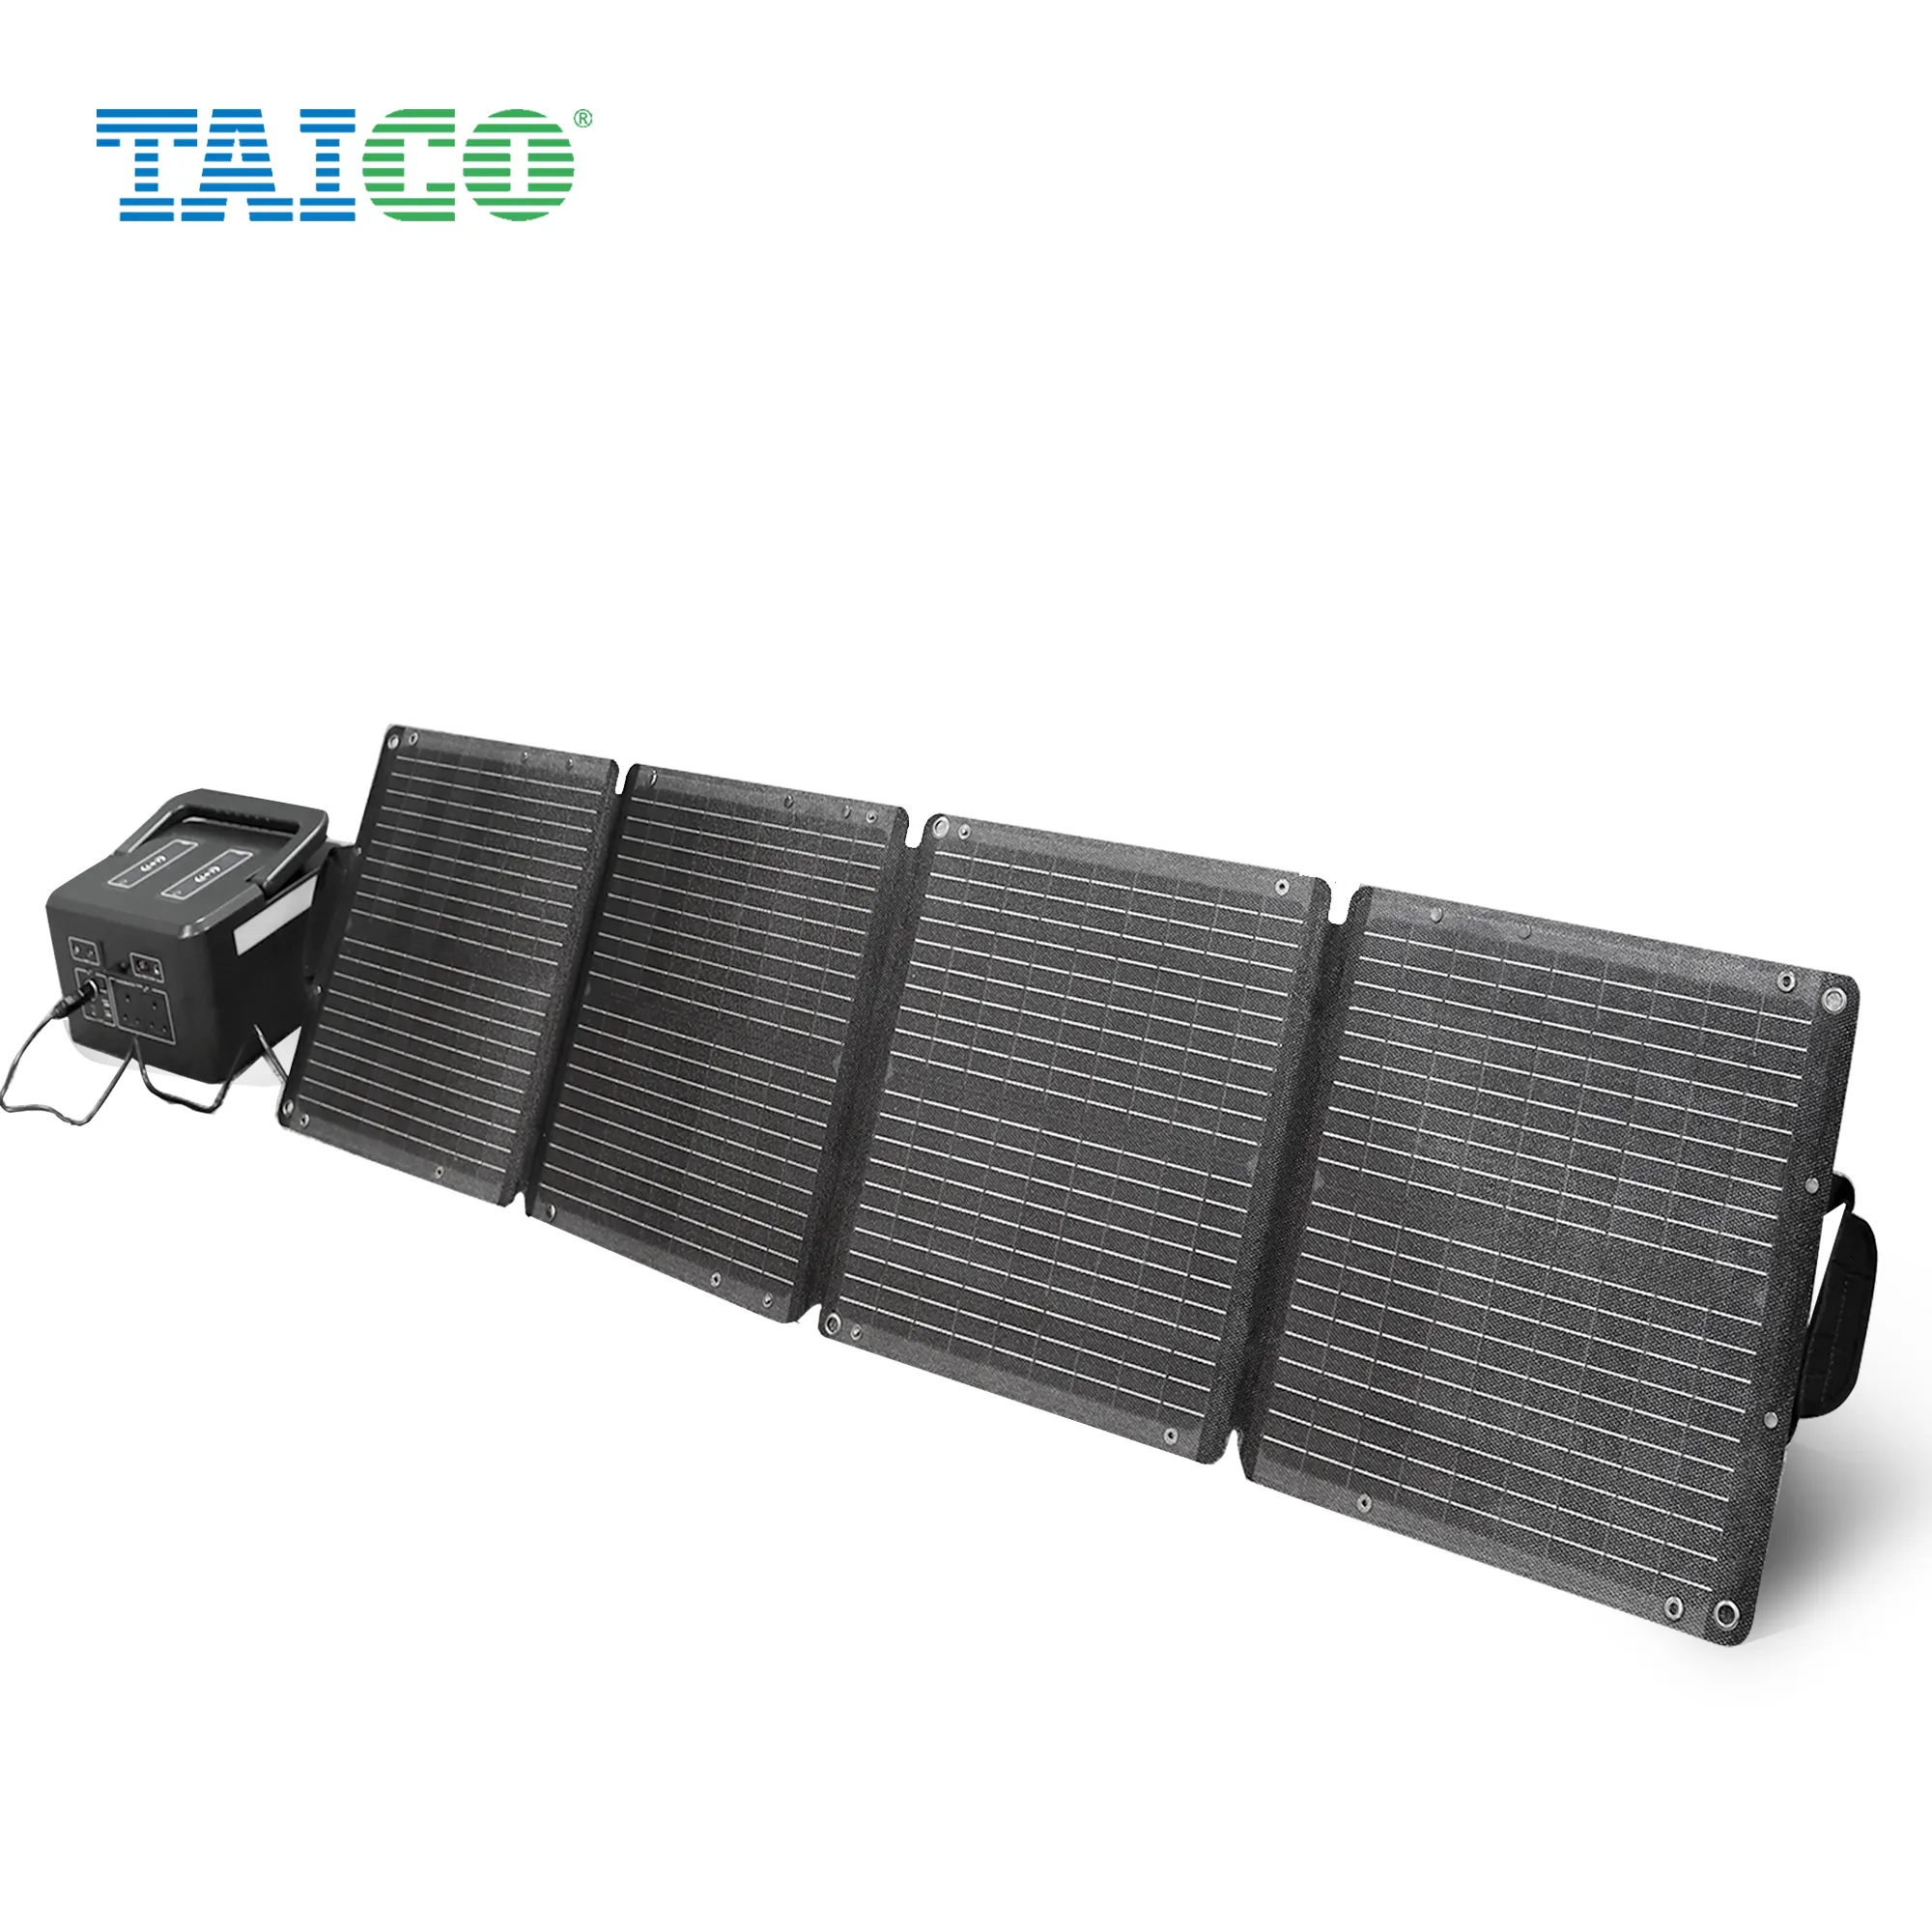 TAICO 100w 20v Mono katlanabilir taşınabilir GÜNEŞ PANELI sırt çantası Etfe esnek güneş panelleri kamp için